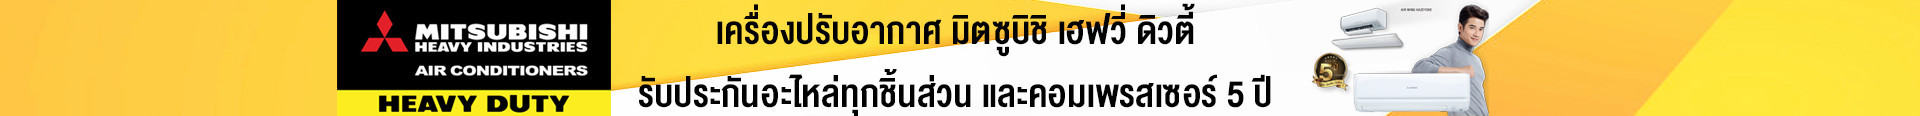 banner header